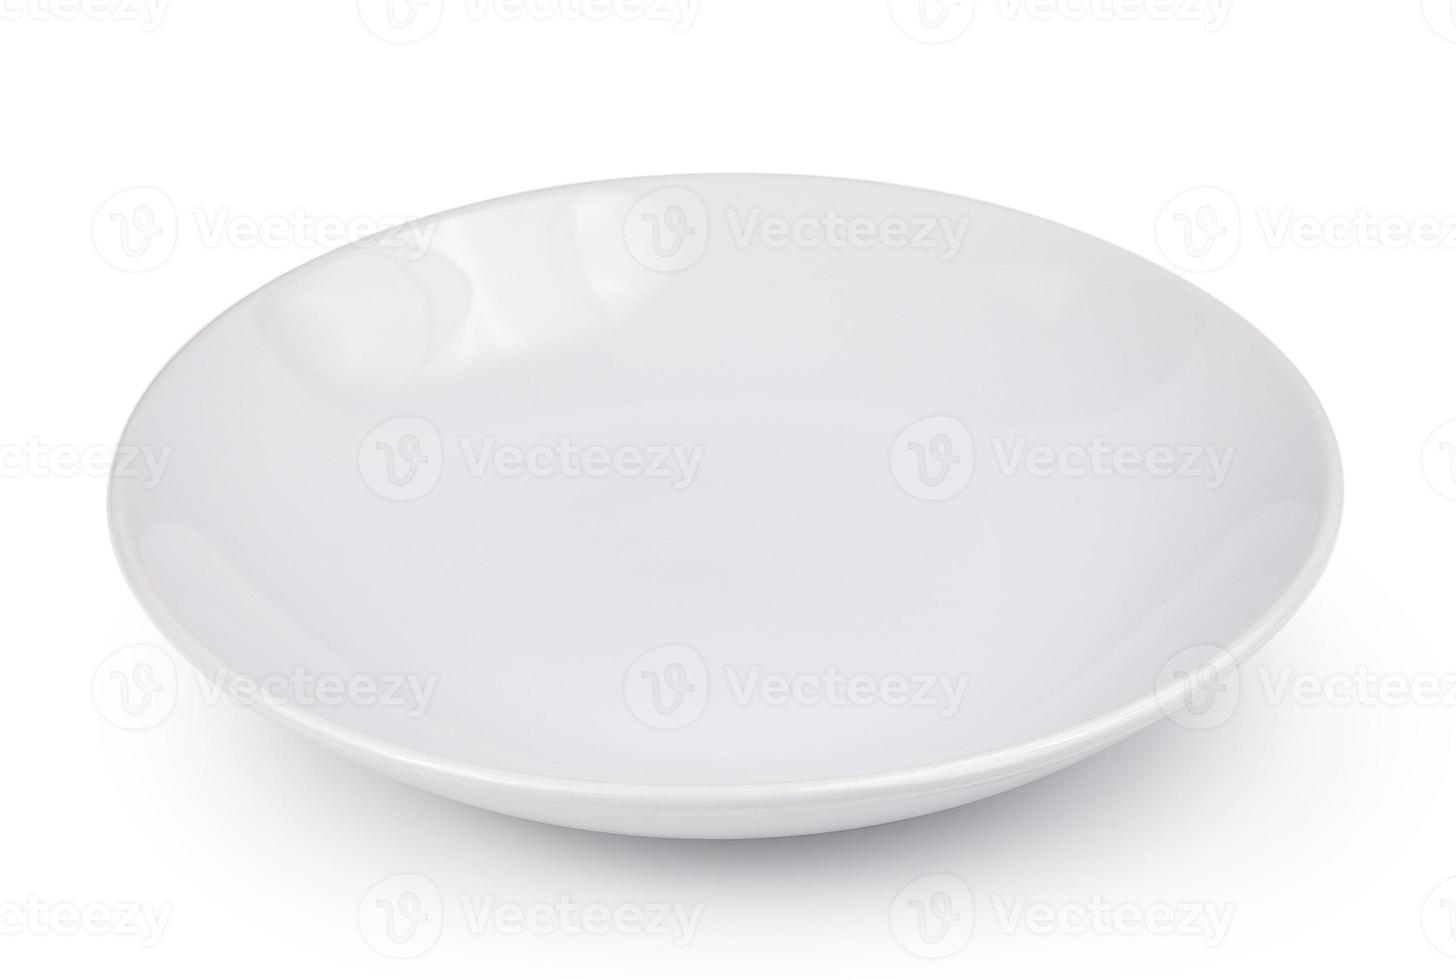 prato vazio isolado em um fundo branco foto